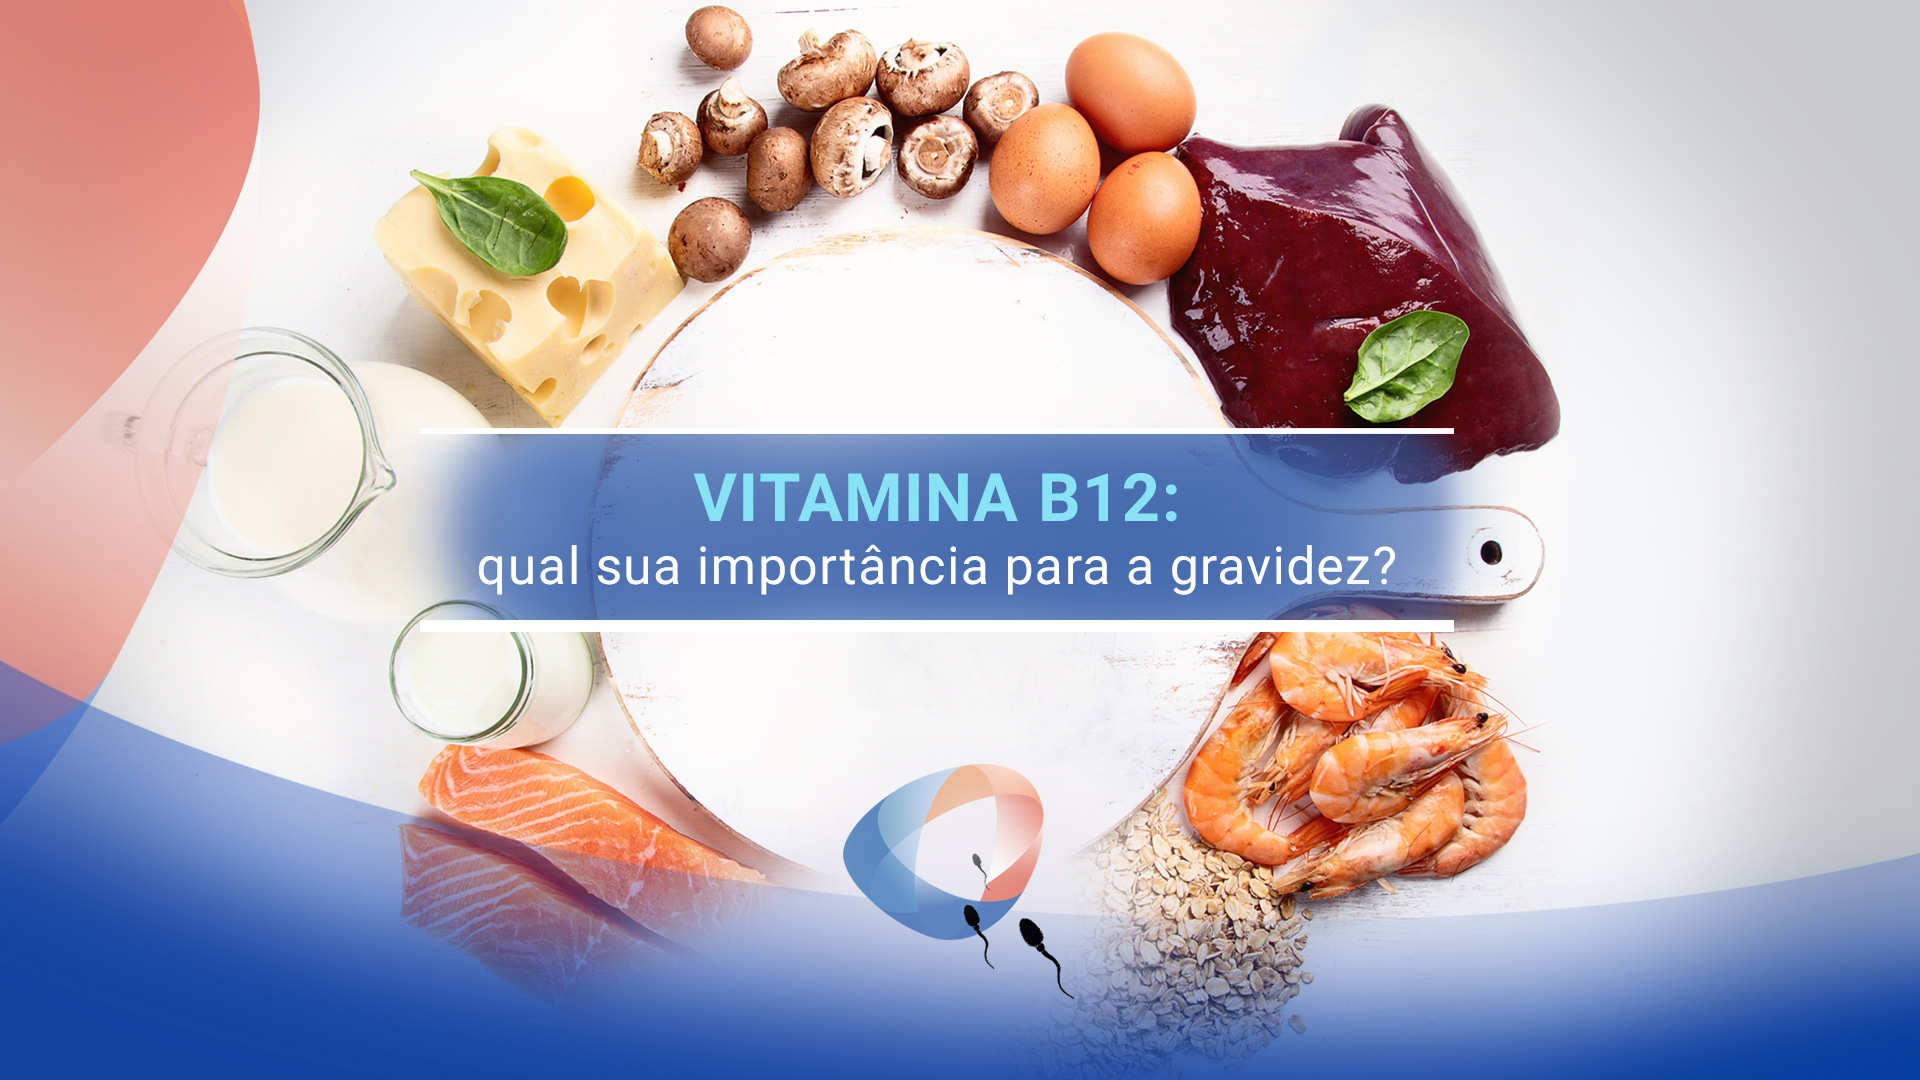 Vitamina B12: qual sua importância para a gravidez?